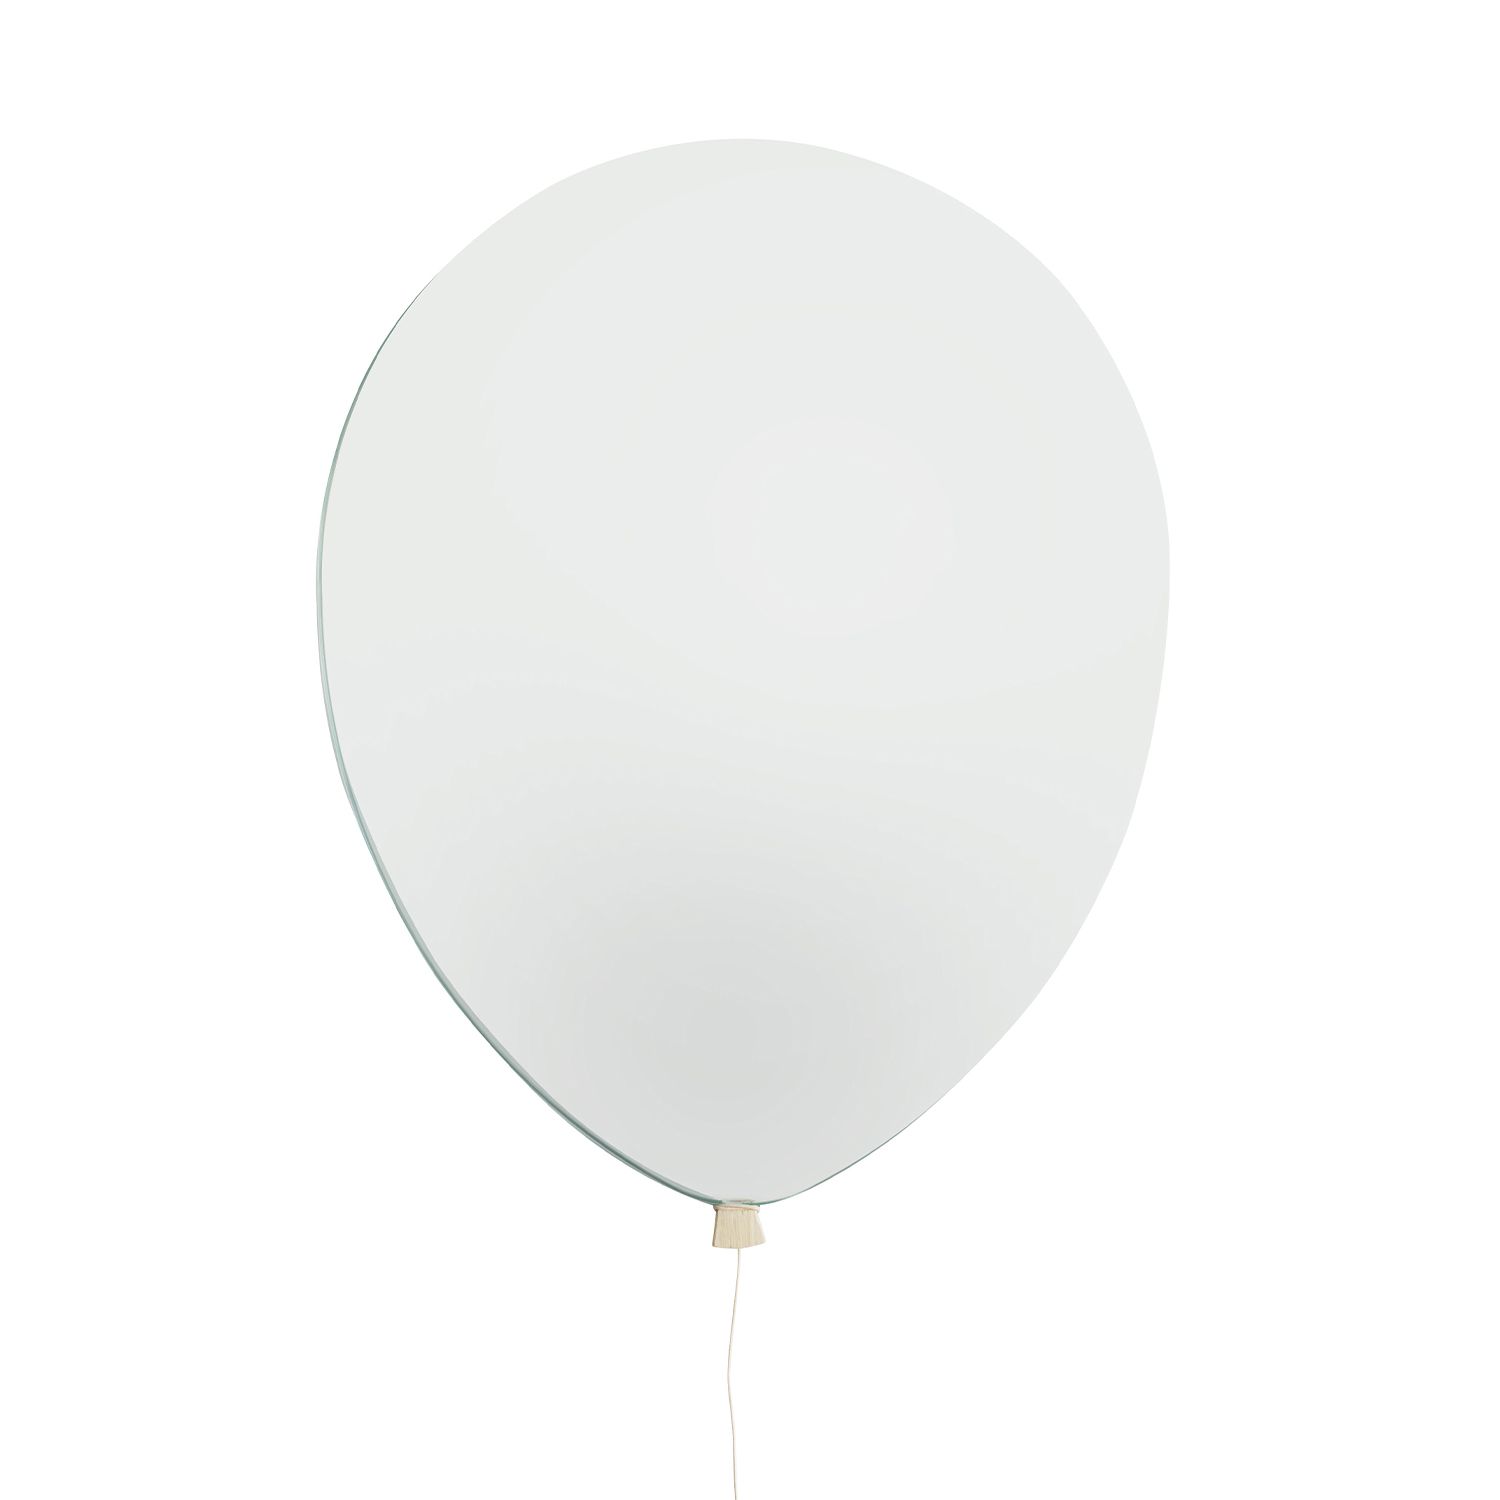 EO designová zrcadla Balloon Mirror S - DESIGNPROPAGANDA